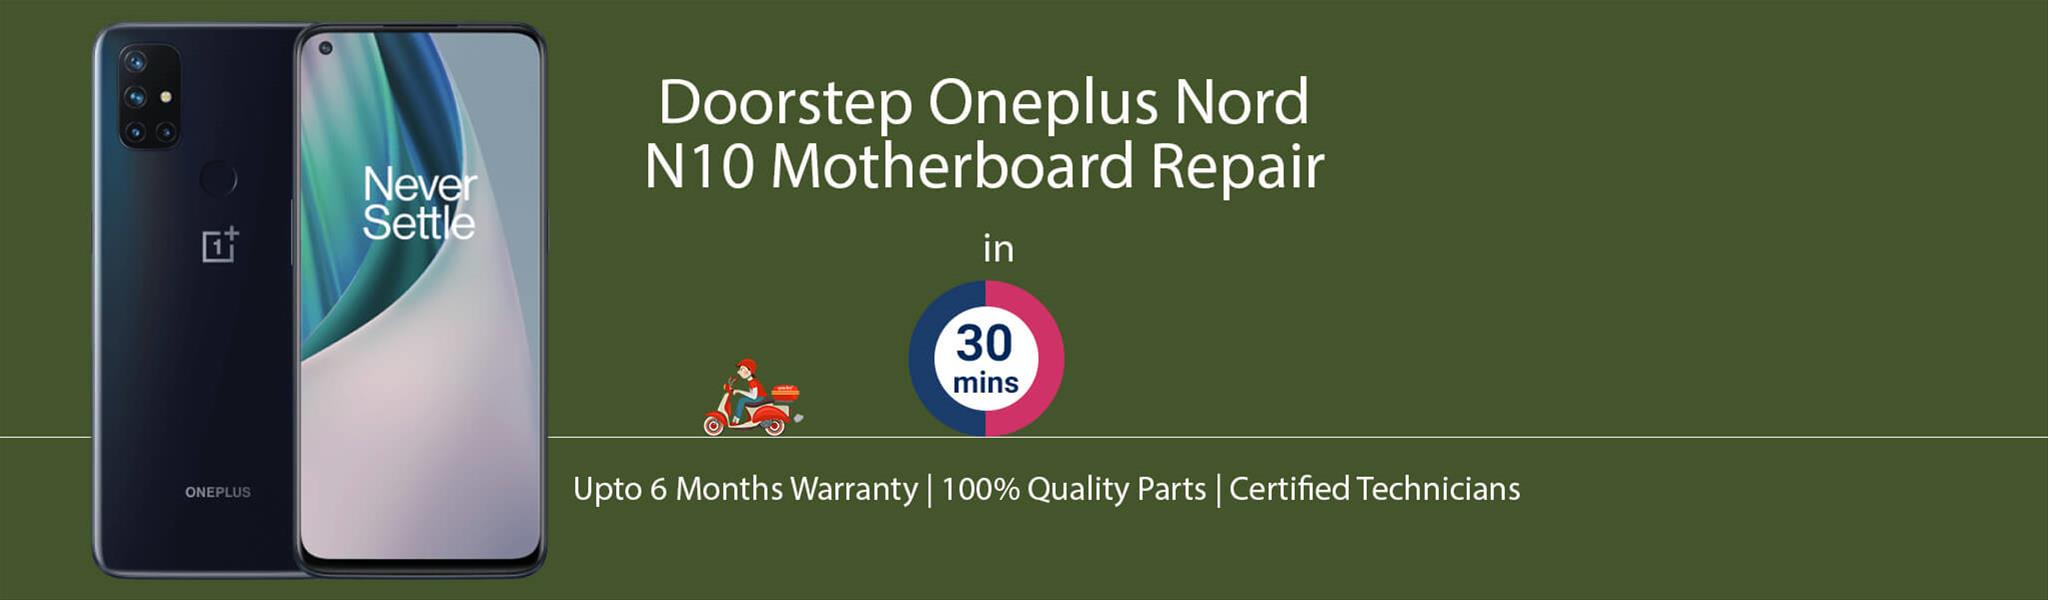 oneplus-nord-n10-motherboard-repair.jpg